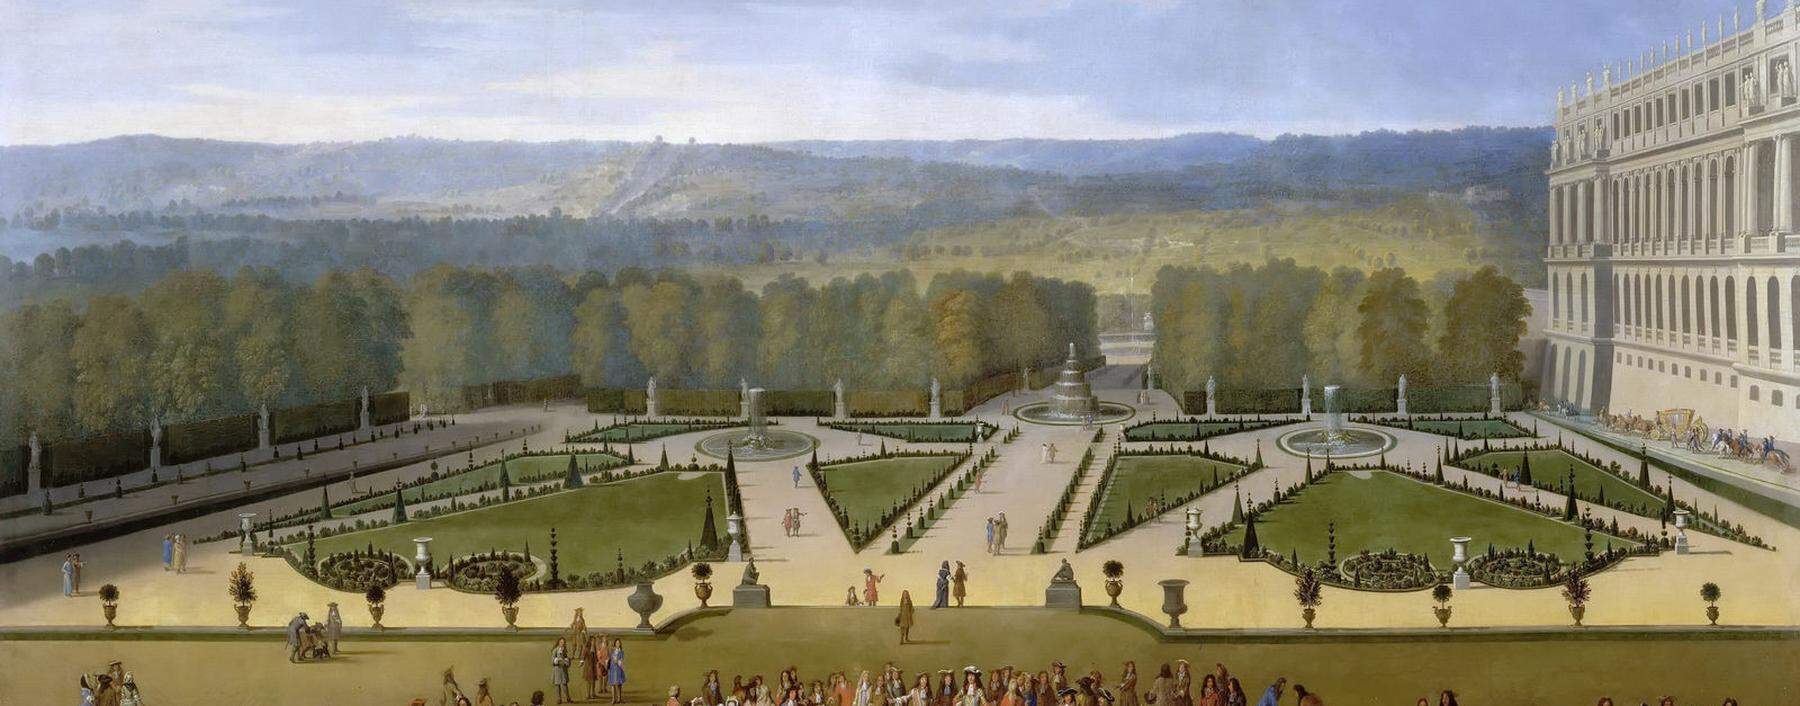 Reisende aus ganz Europa bewunderten um 1700 die Gartenanlagen von Schloss Versailles. Unter ihnen war der stets kritische österreichische Graf Harrach.